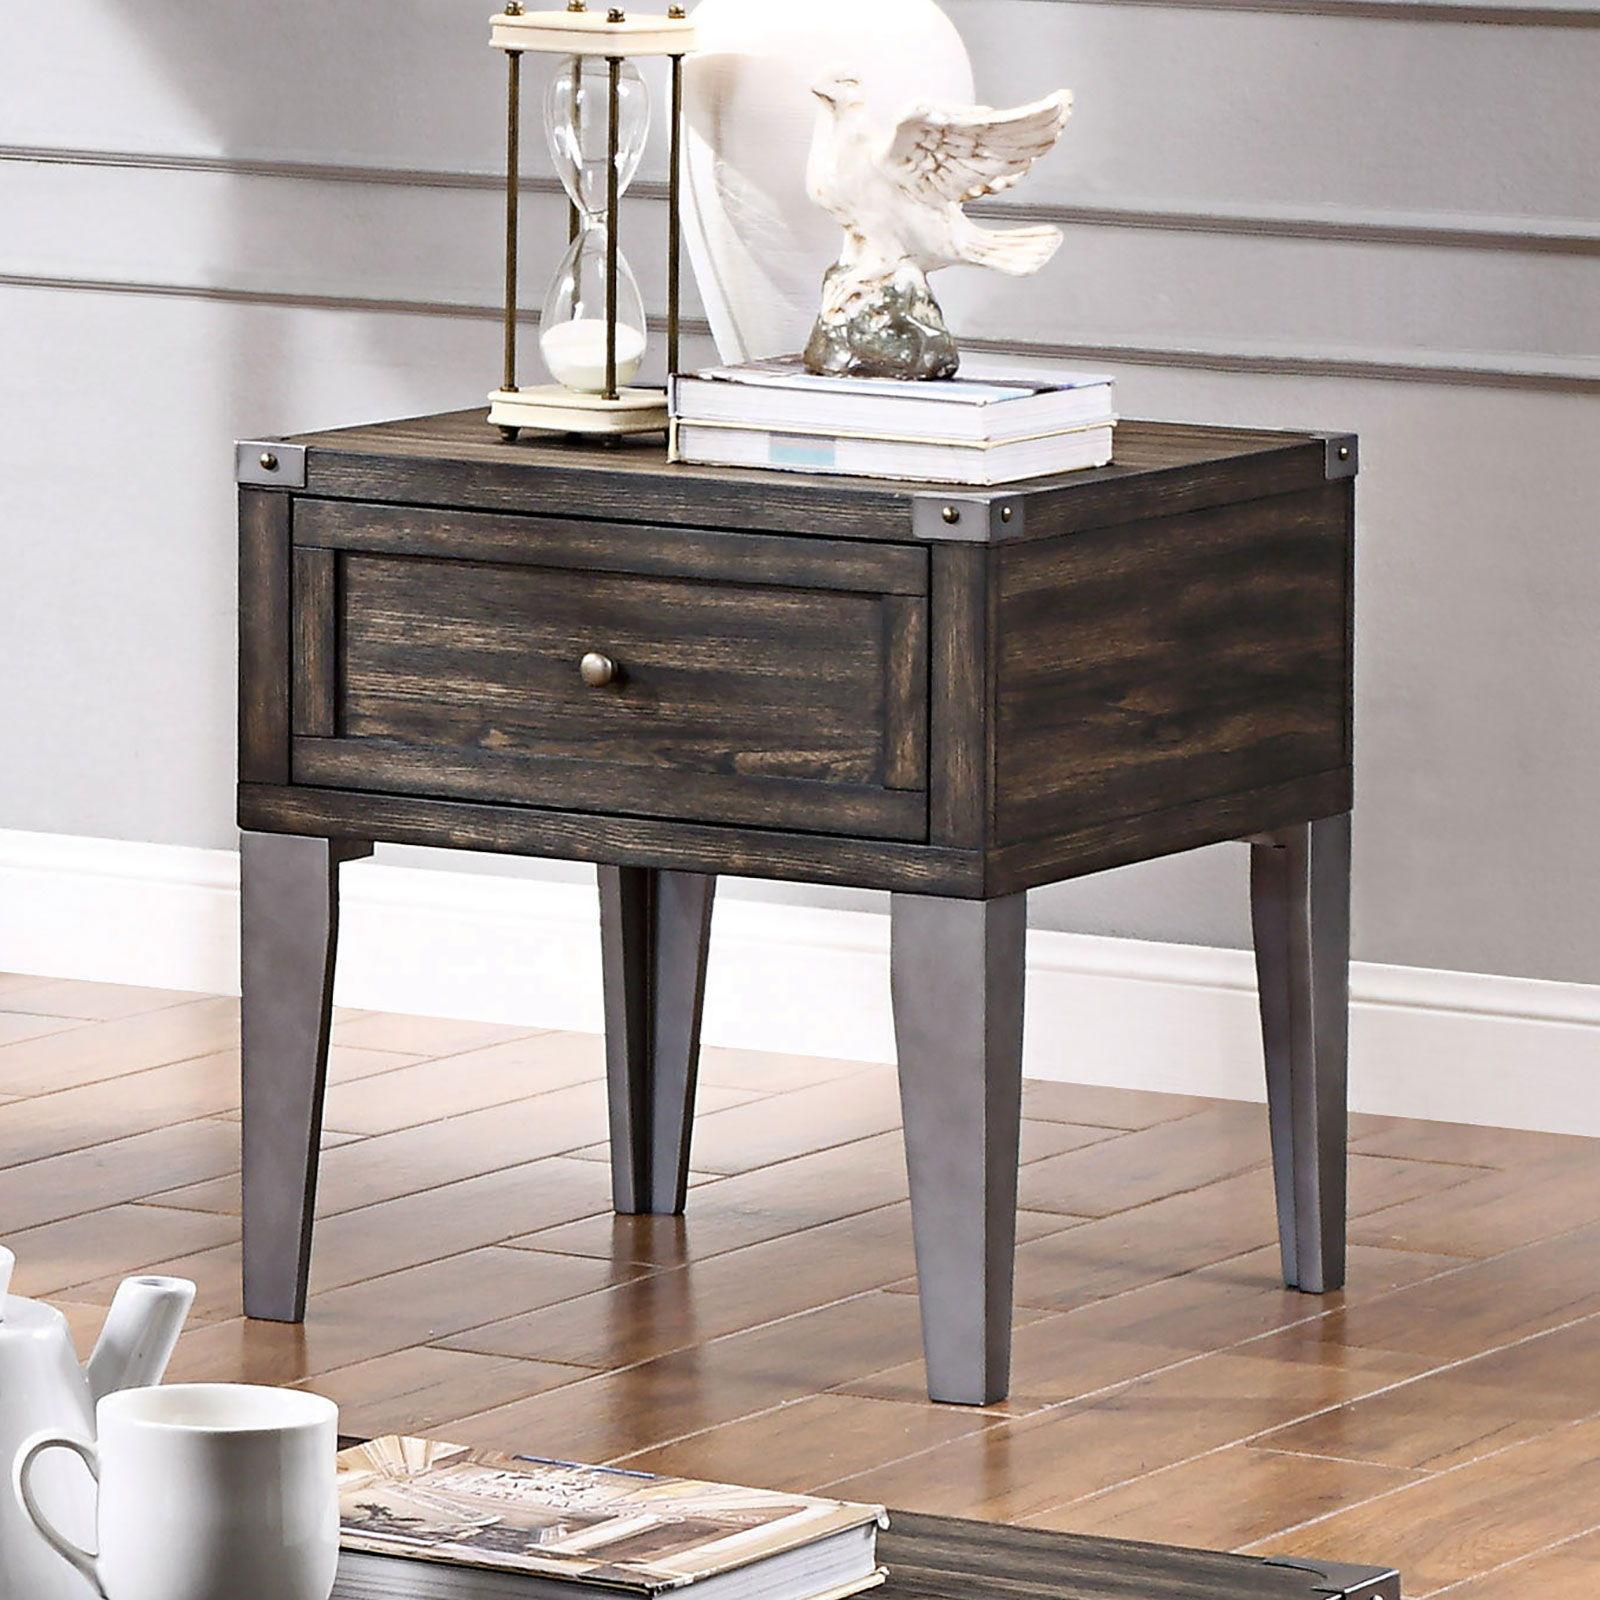 Furniture of America - Piedmont - End Table - Dark Oak - 5th Avenue Furniture